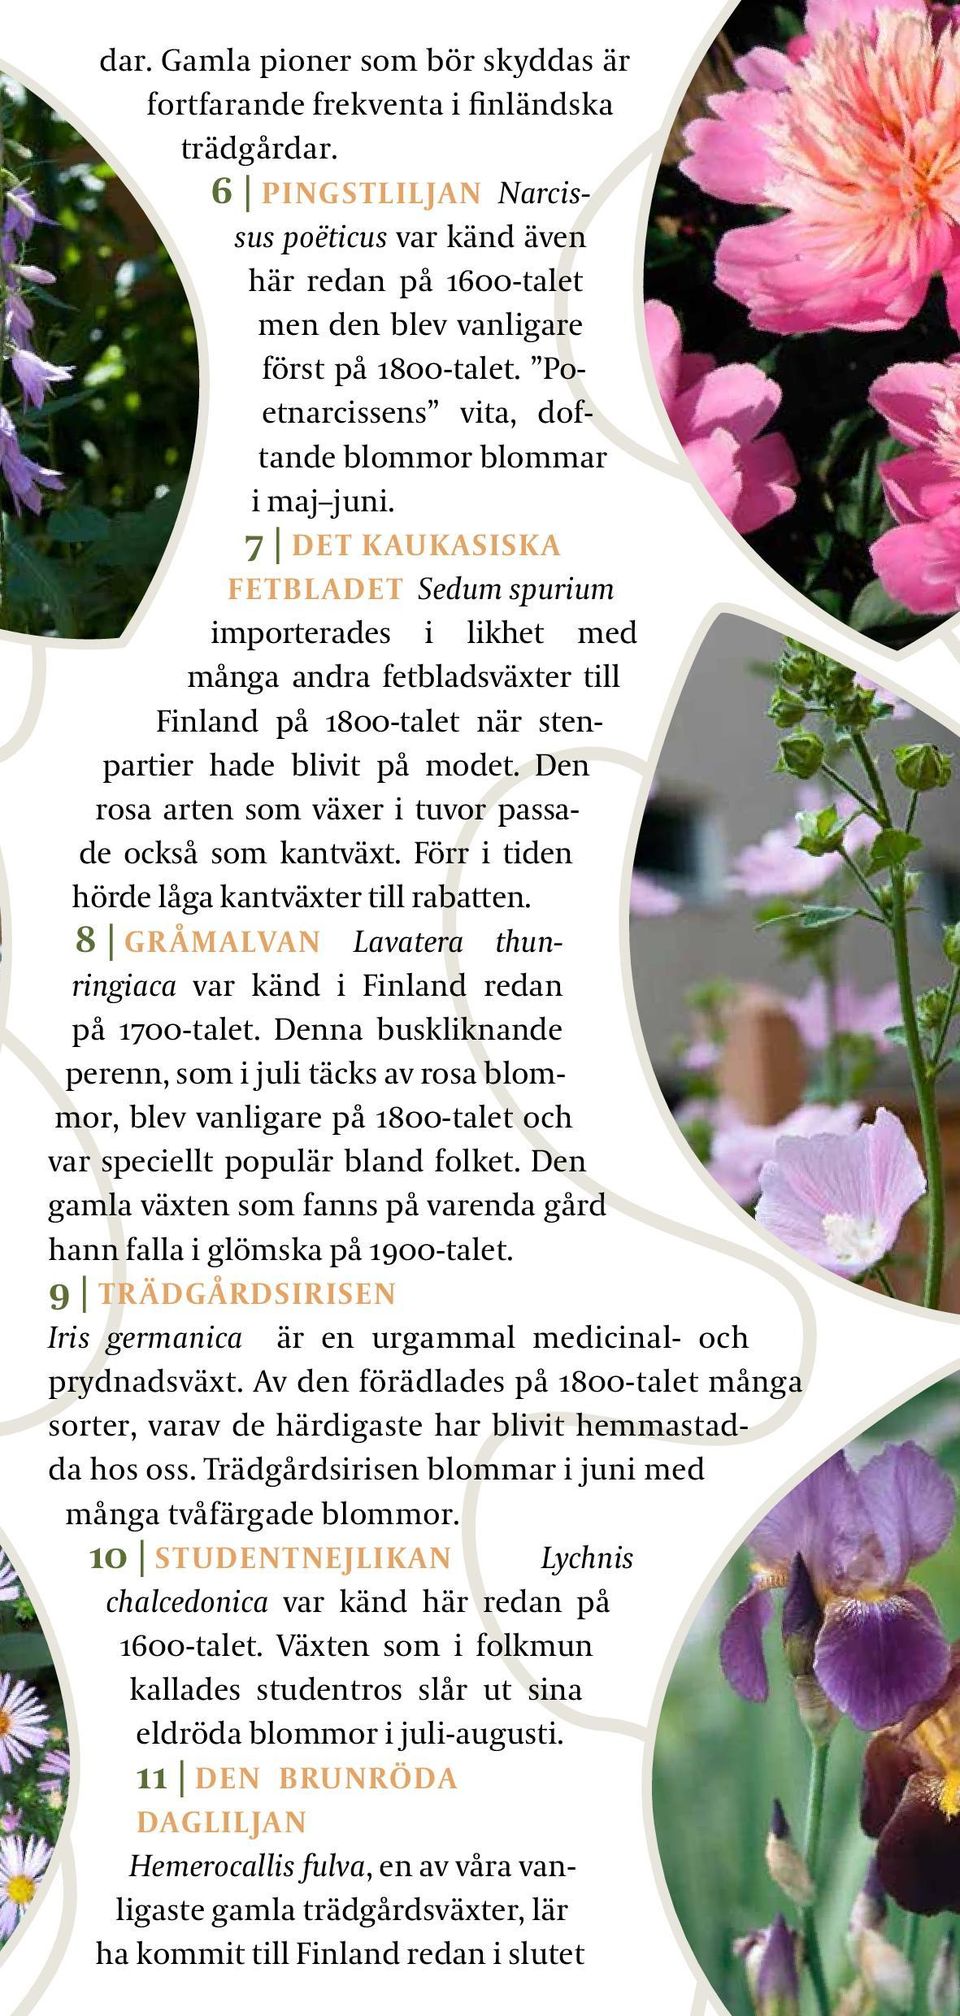 7 DET KAUKASISKA FETBLADET Sedum spurium importerades i likhet med många andra fetbladsväxter till Finland på 1800-talet när stenpartier hade blivit på modet.